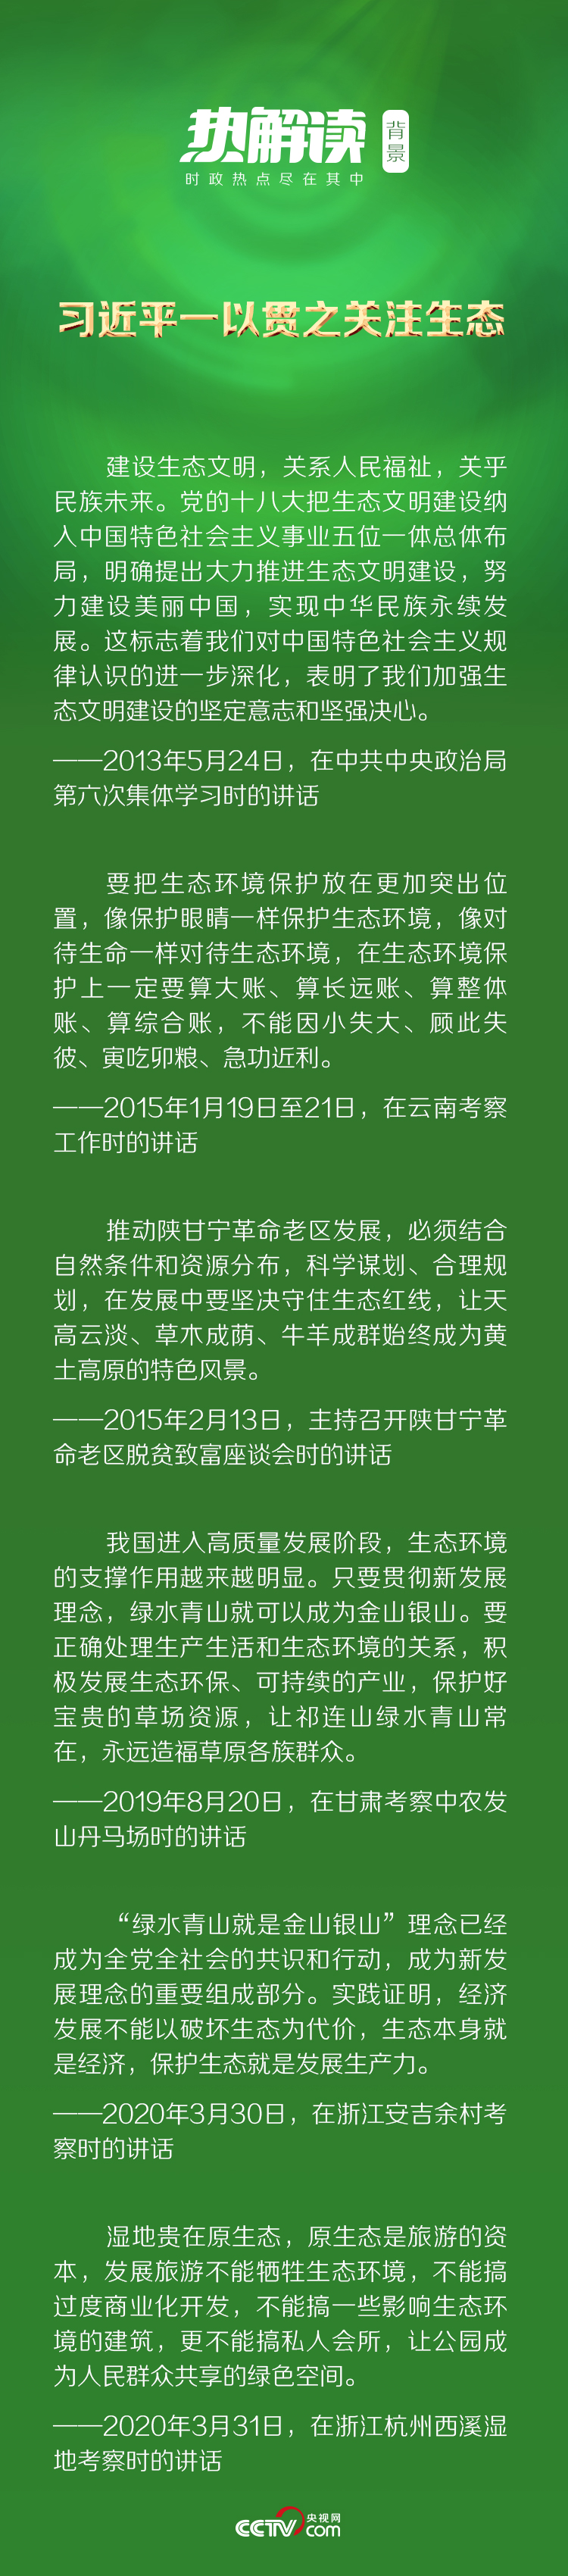 河北省深泽县第二轮核检初筛呈阳性19例 县长被革职